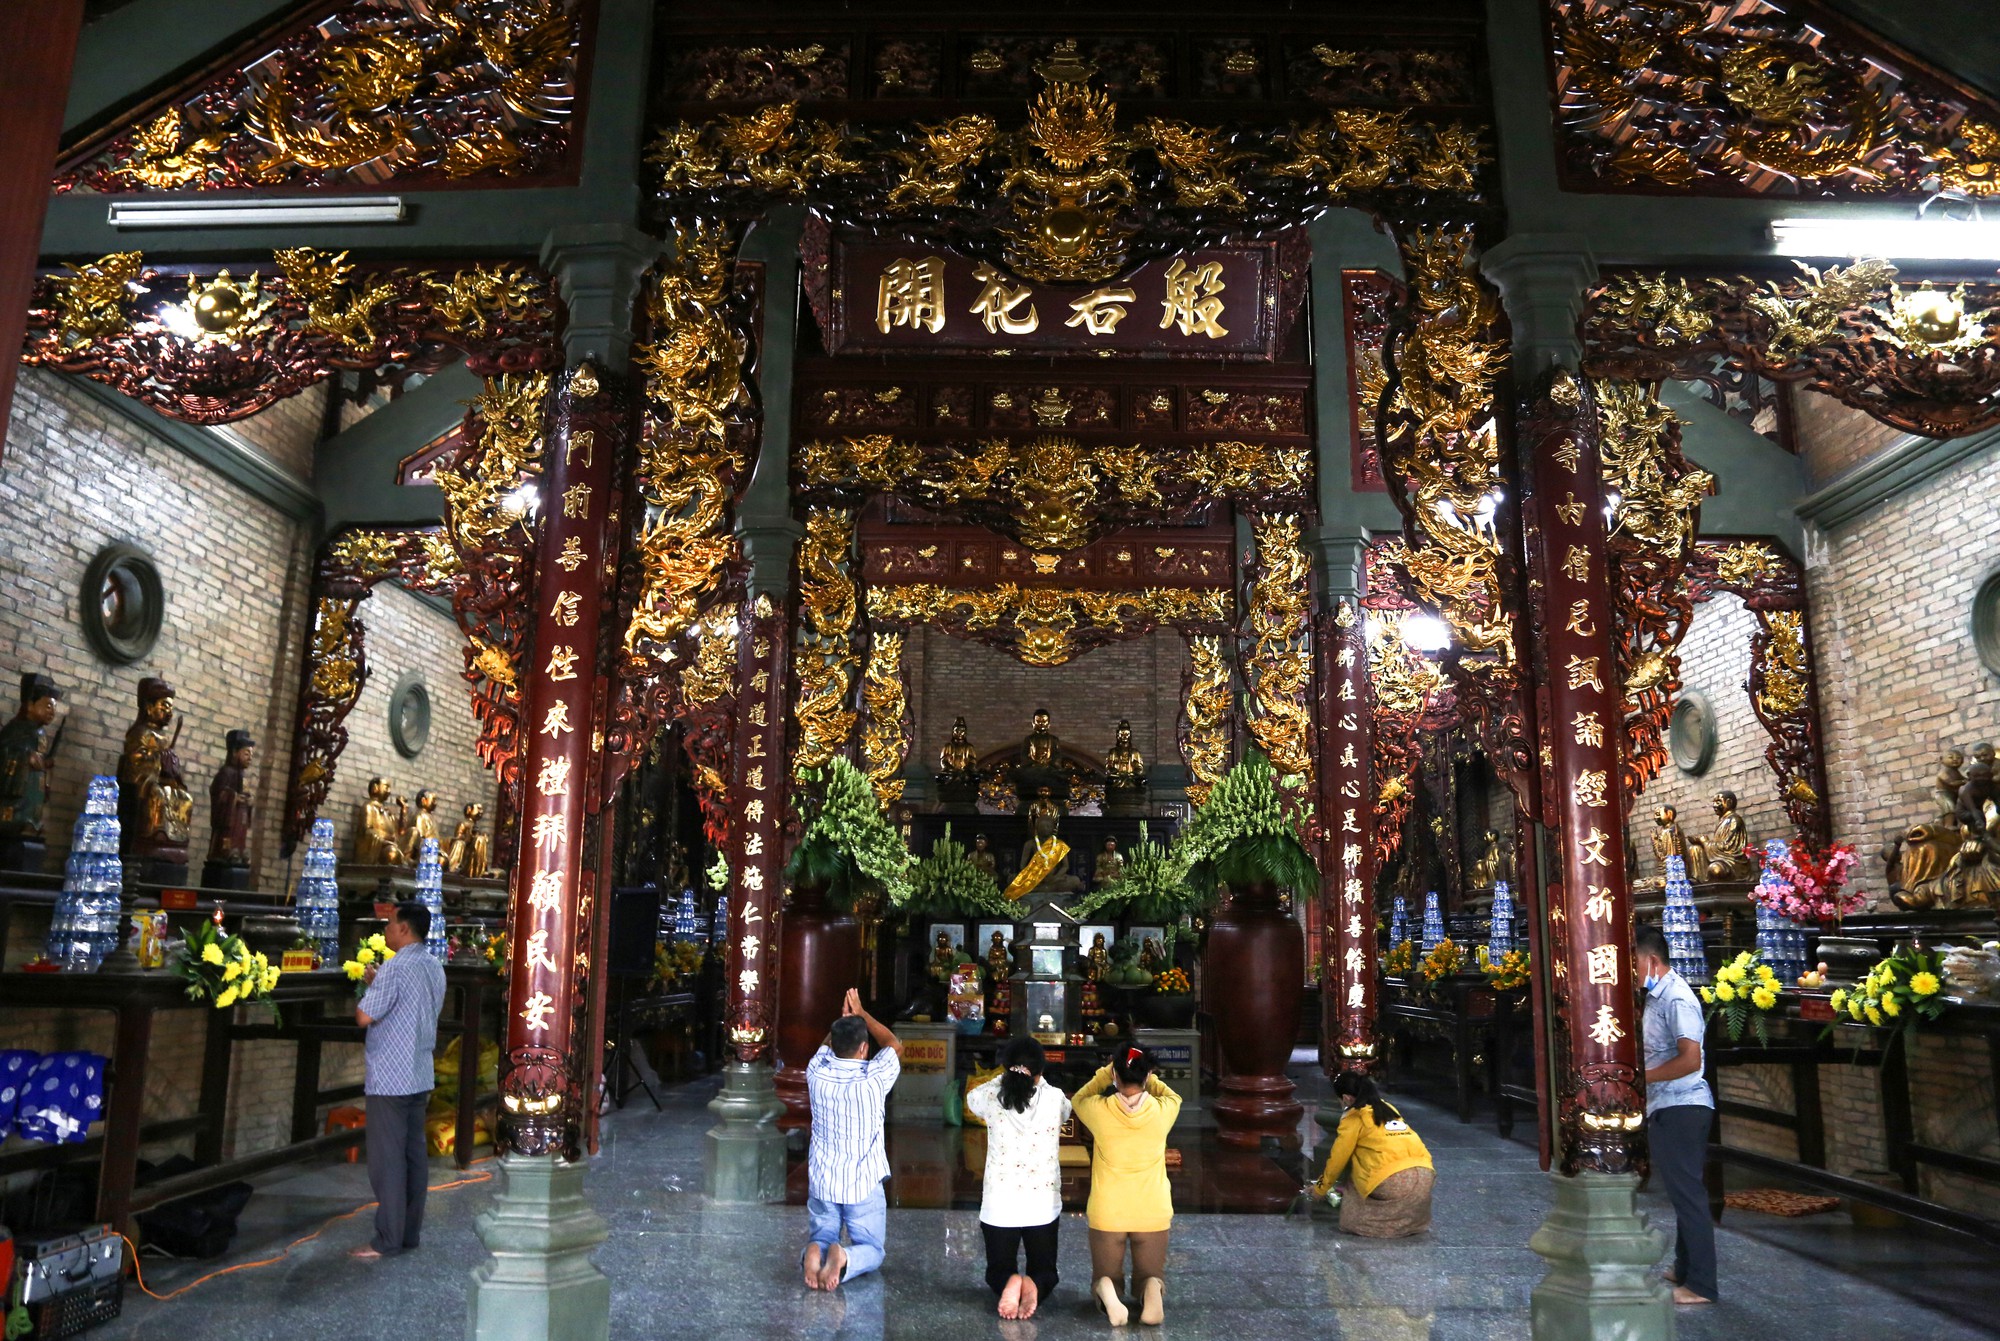 Đi lễ Phật ở ngôi chùa trăm năm tuổi ở Tây Ninh - Ảnh 4.